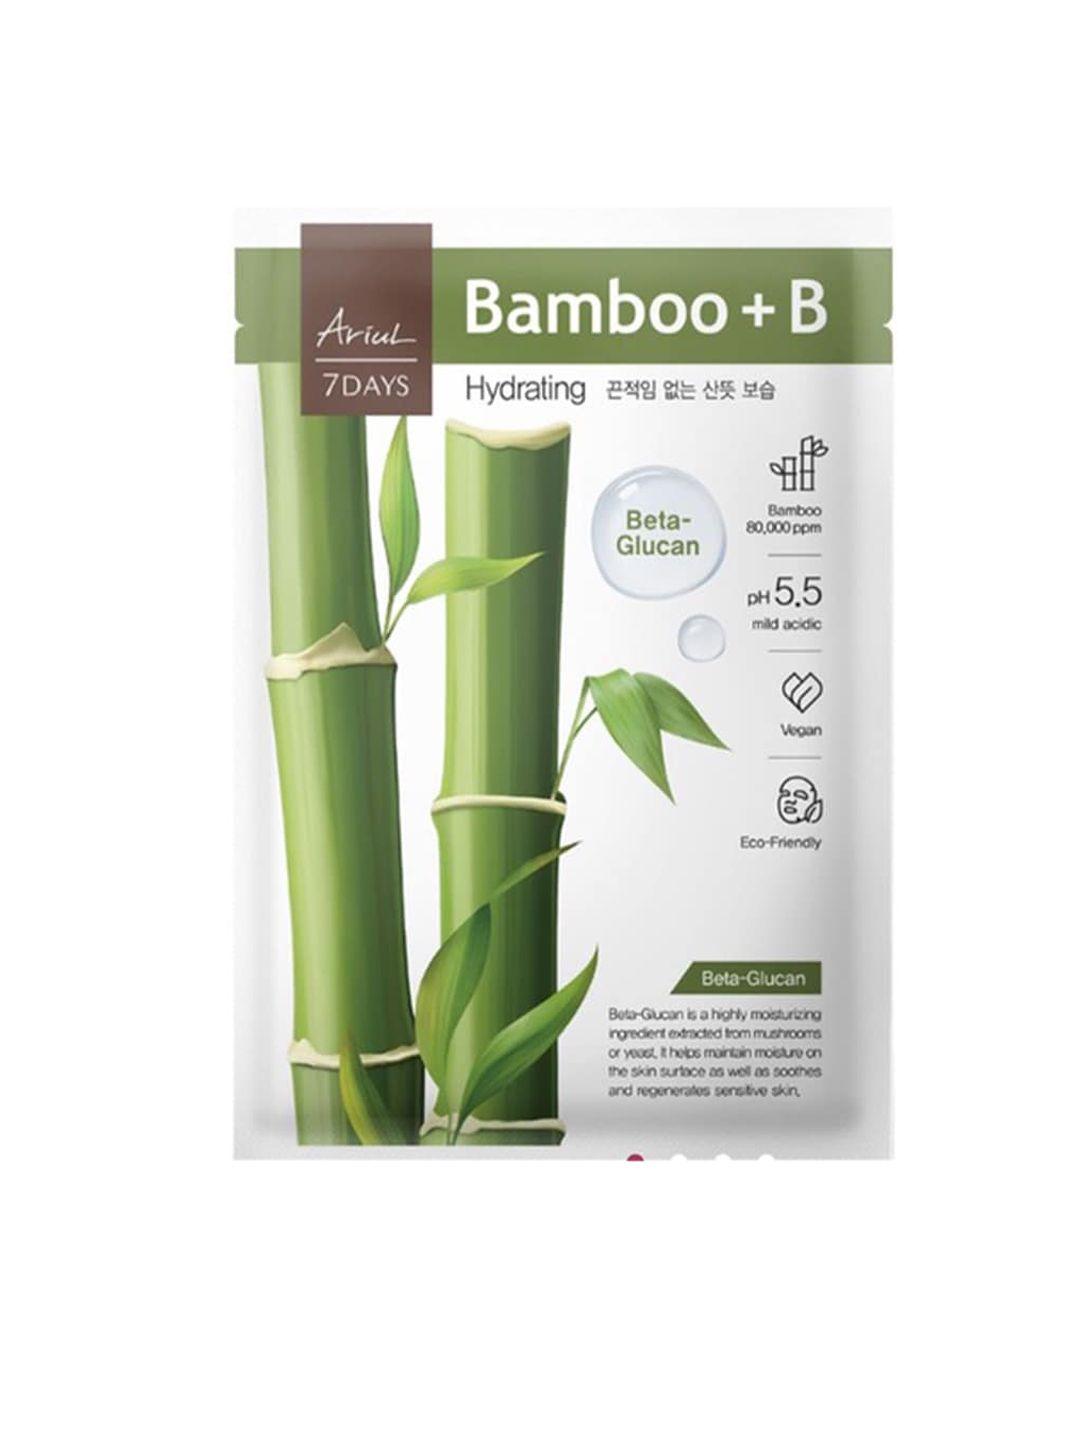 ariul 7 days bamboo + b face mask 40ml